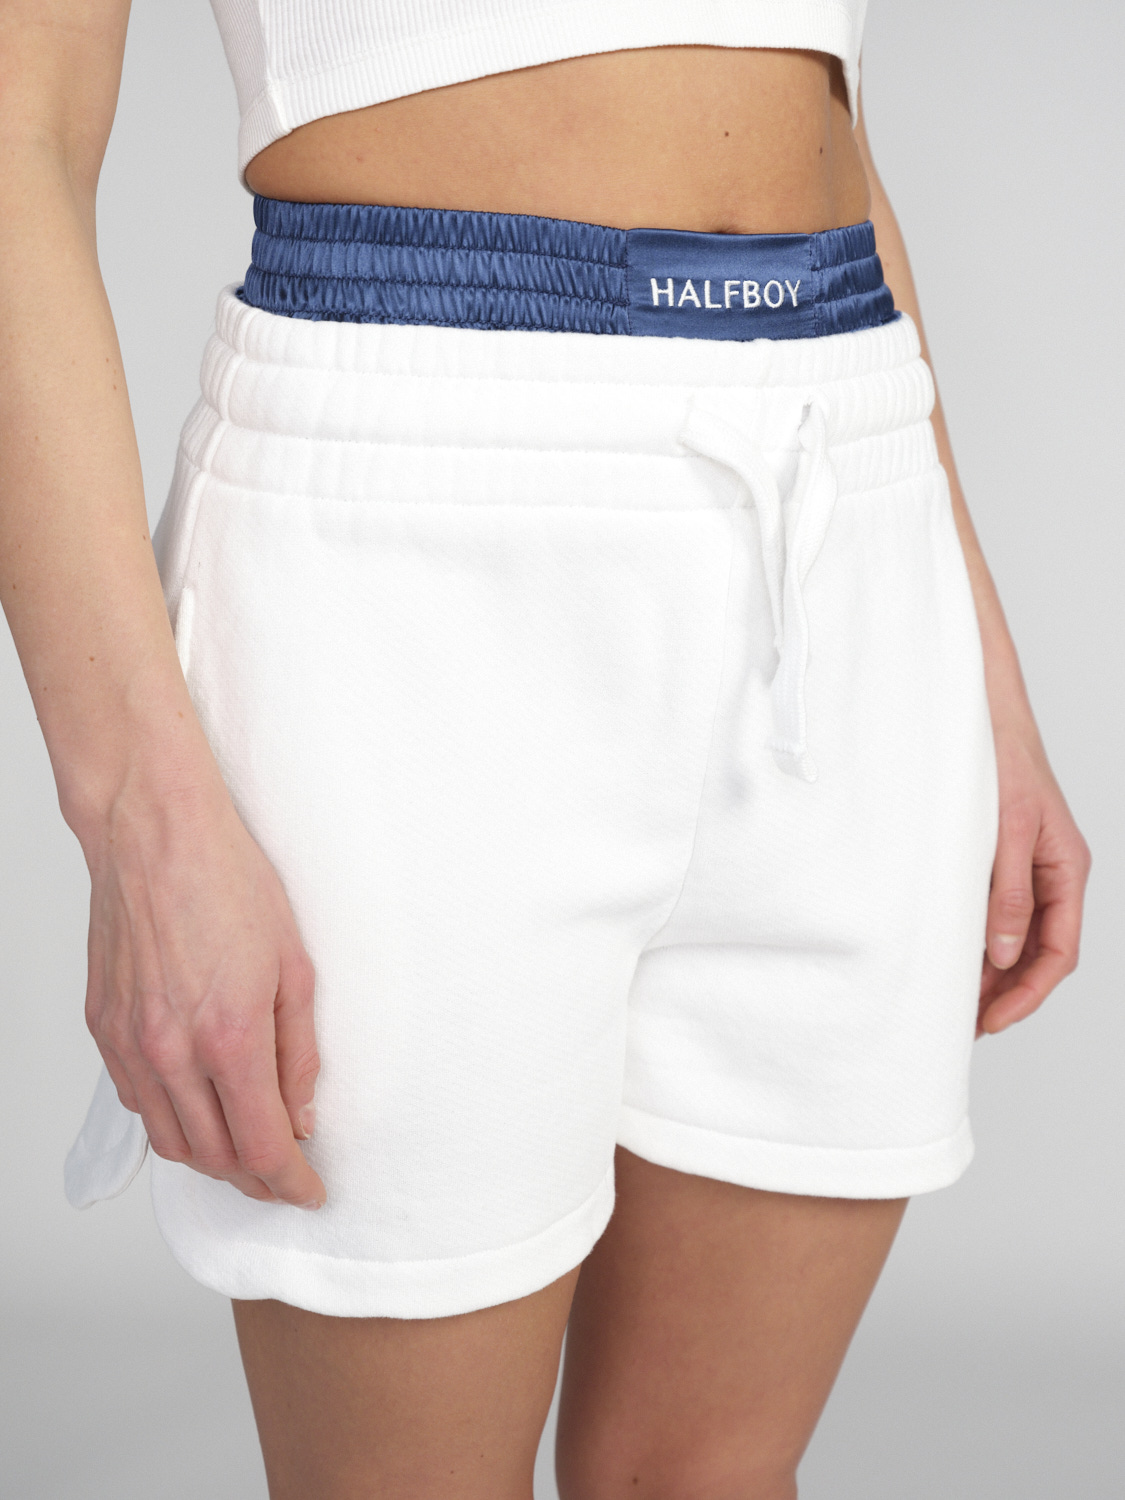 Halfboy Con boxer - Pantaloncini in cotone con dettaglio boxer  bianco XS